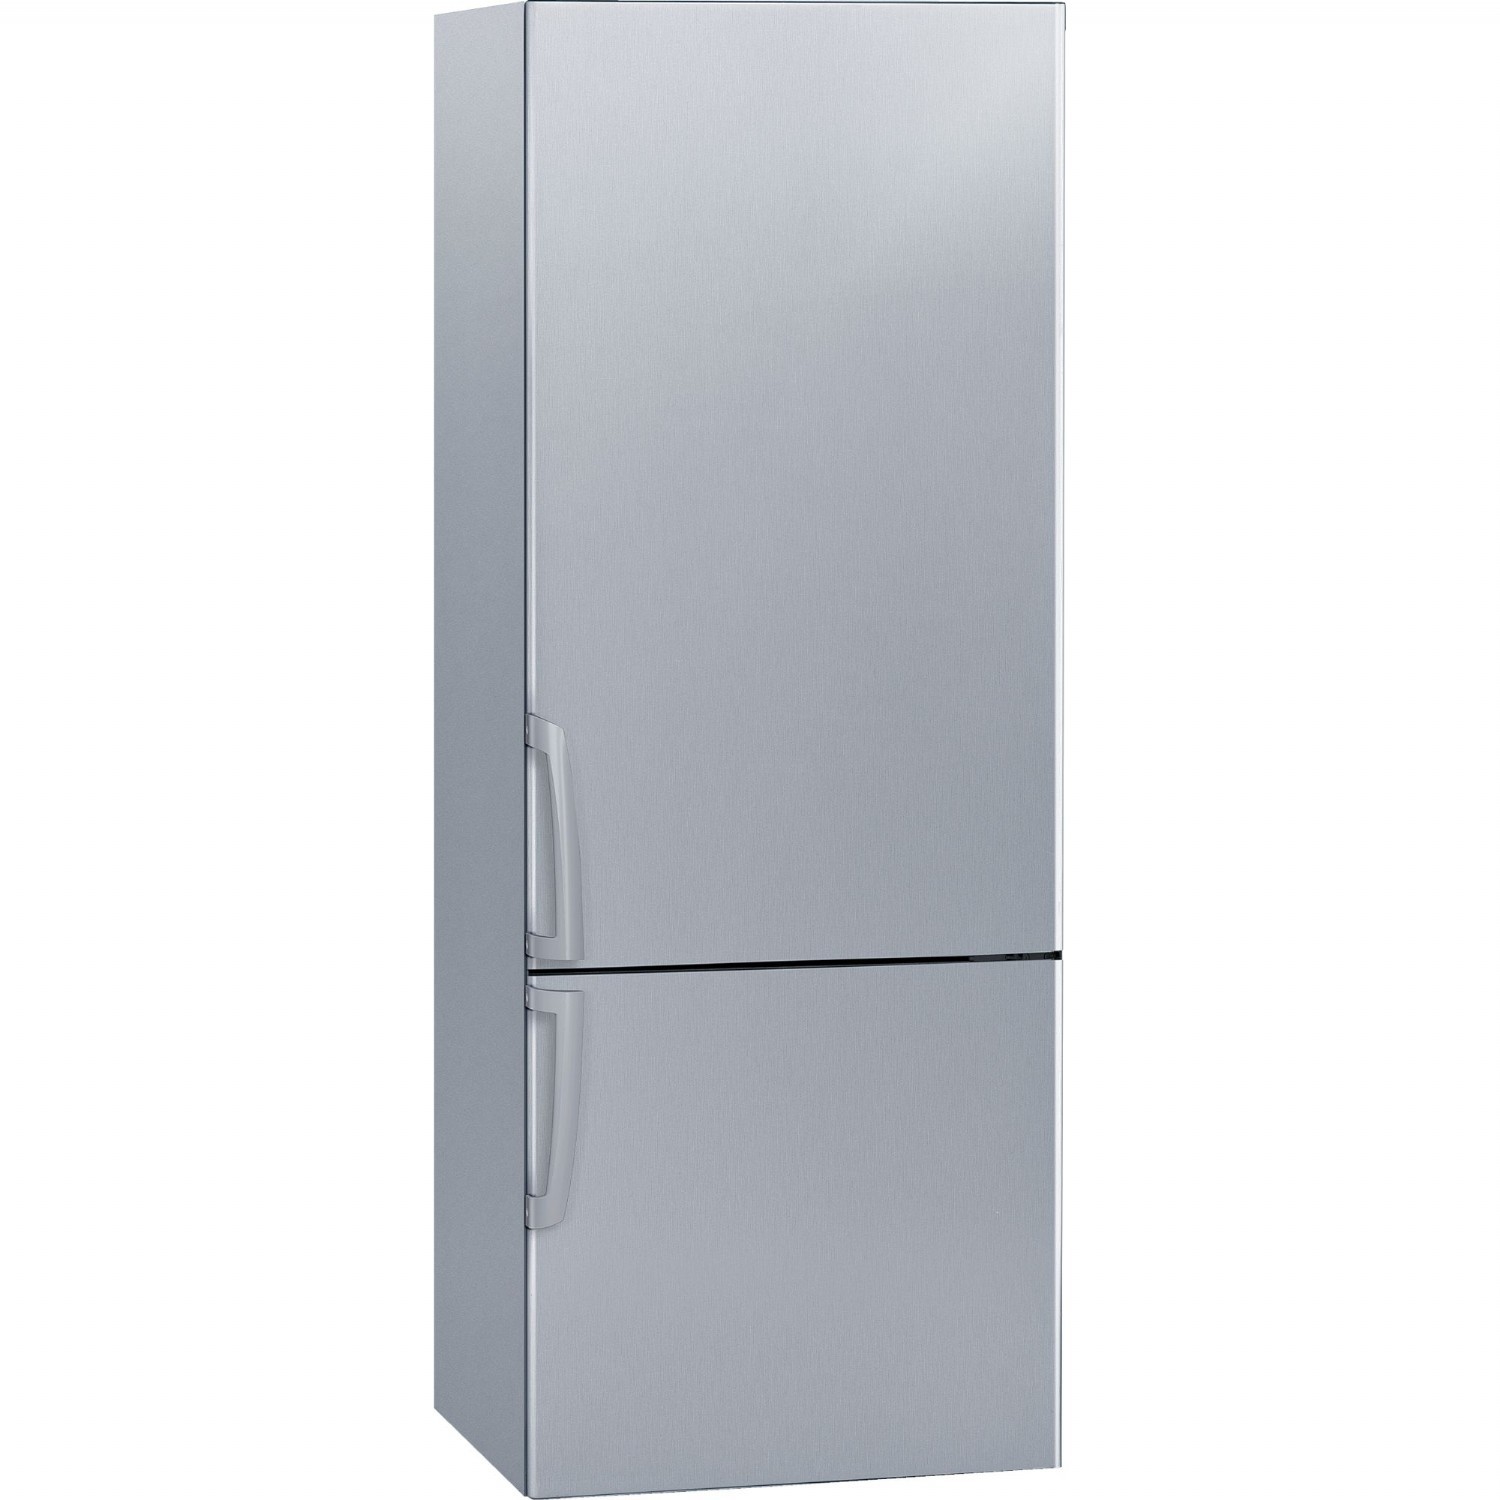 Buzdolabı | Profilo BD3257L2NN Kombi No-Frost Buzdolabı | BD3257L2NN | BD3257L2NN, bd3257l2nn, Profilo BD3257L2NN No-Frost Buzdolabı | 